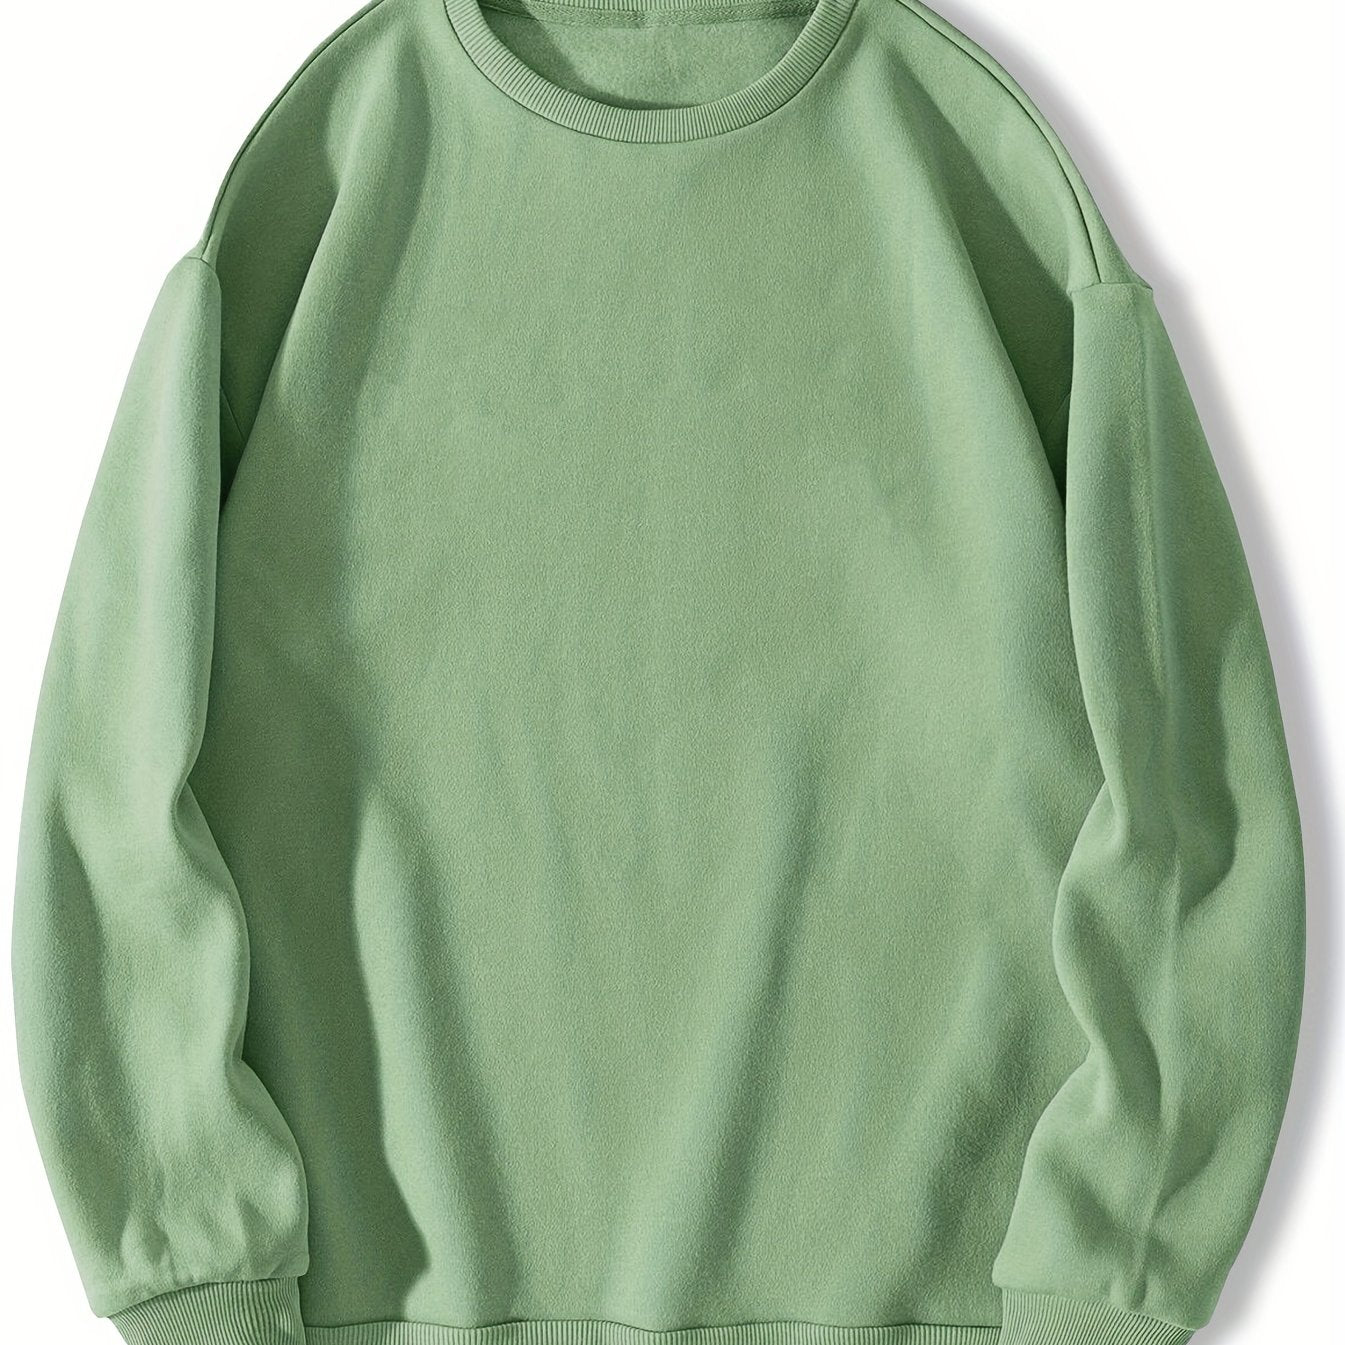 Trendy Solid Sweatshirt, Men's Casual Basic Crew Neck Pullover Sweatshirt For Men Fall Winter